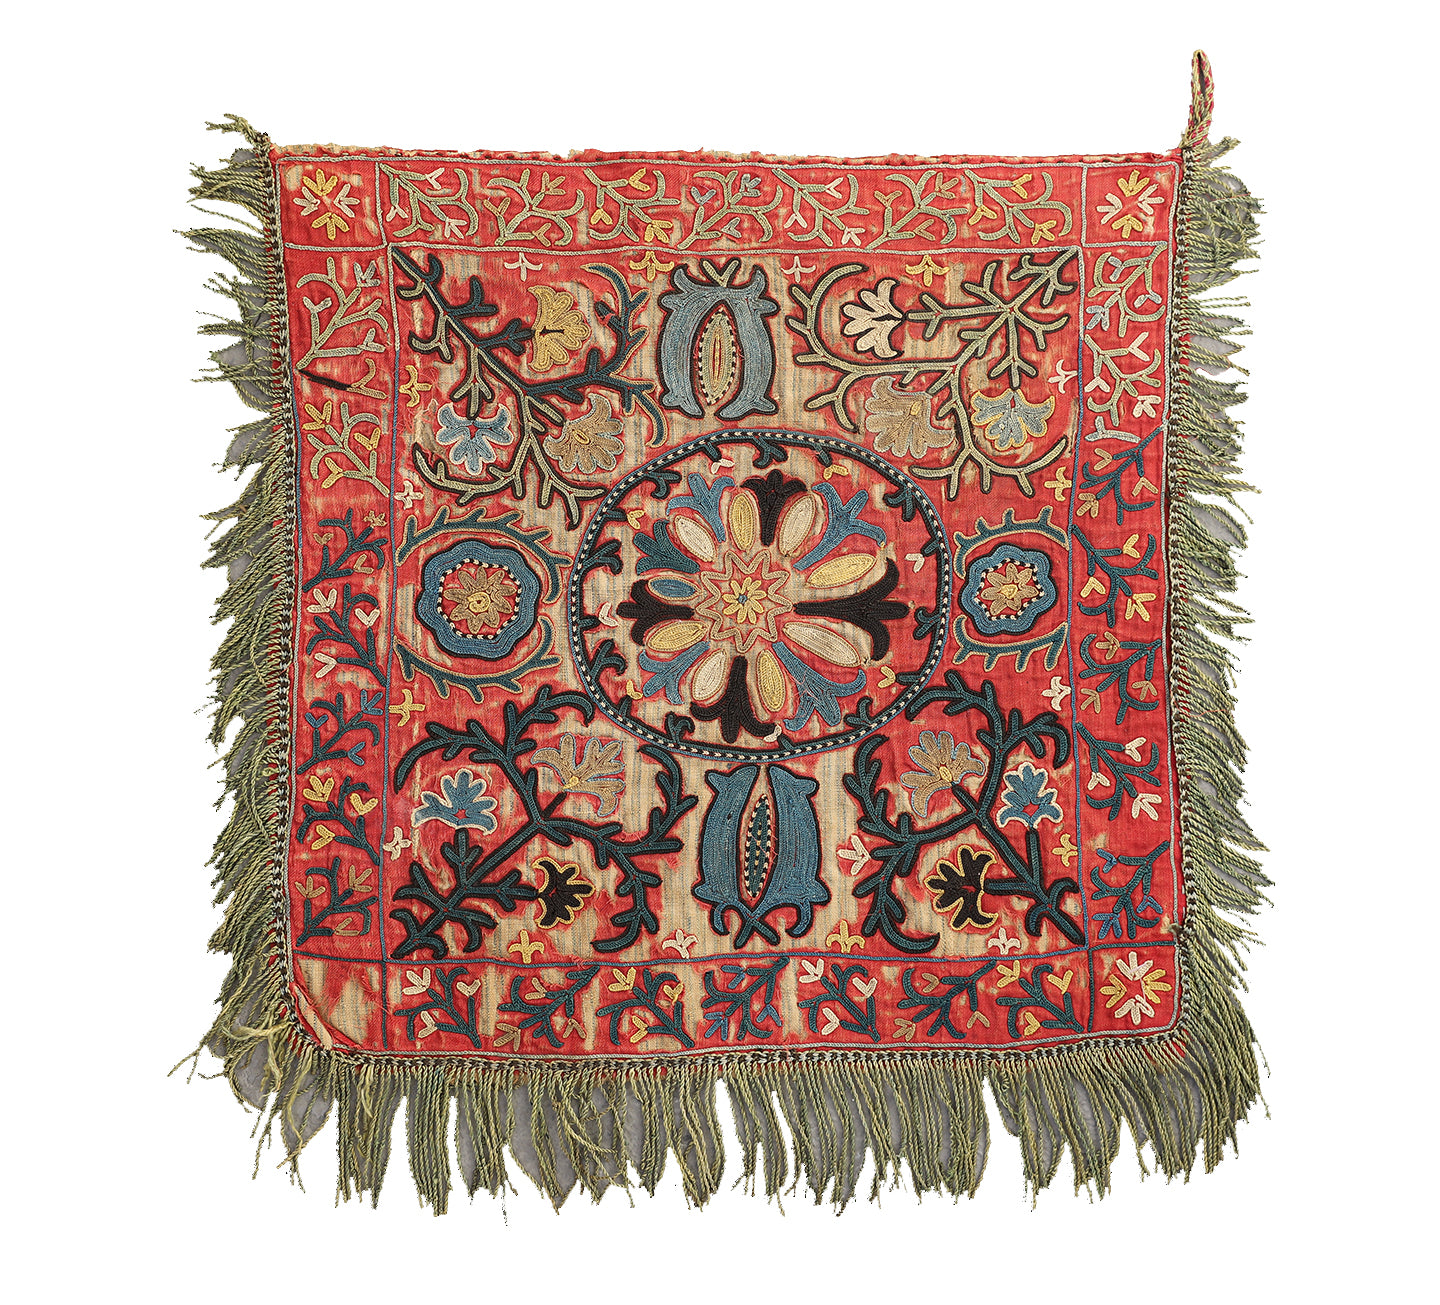 1'5"x1'5" Antique Collectable Afghan Uzbek Laqai Home Decor Textile